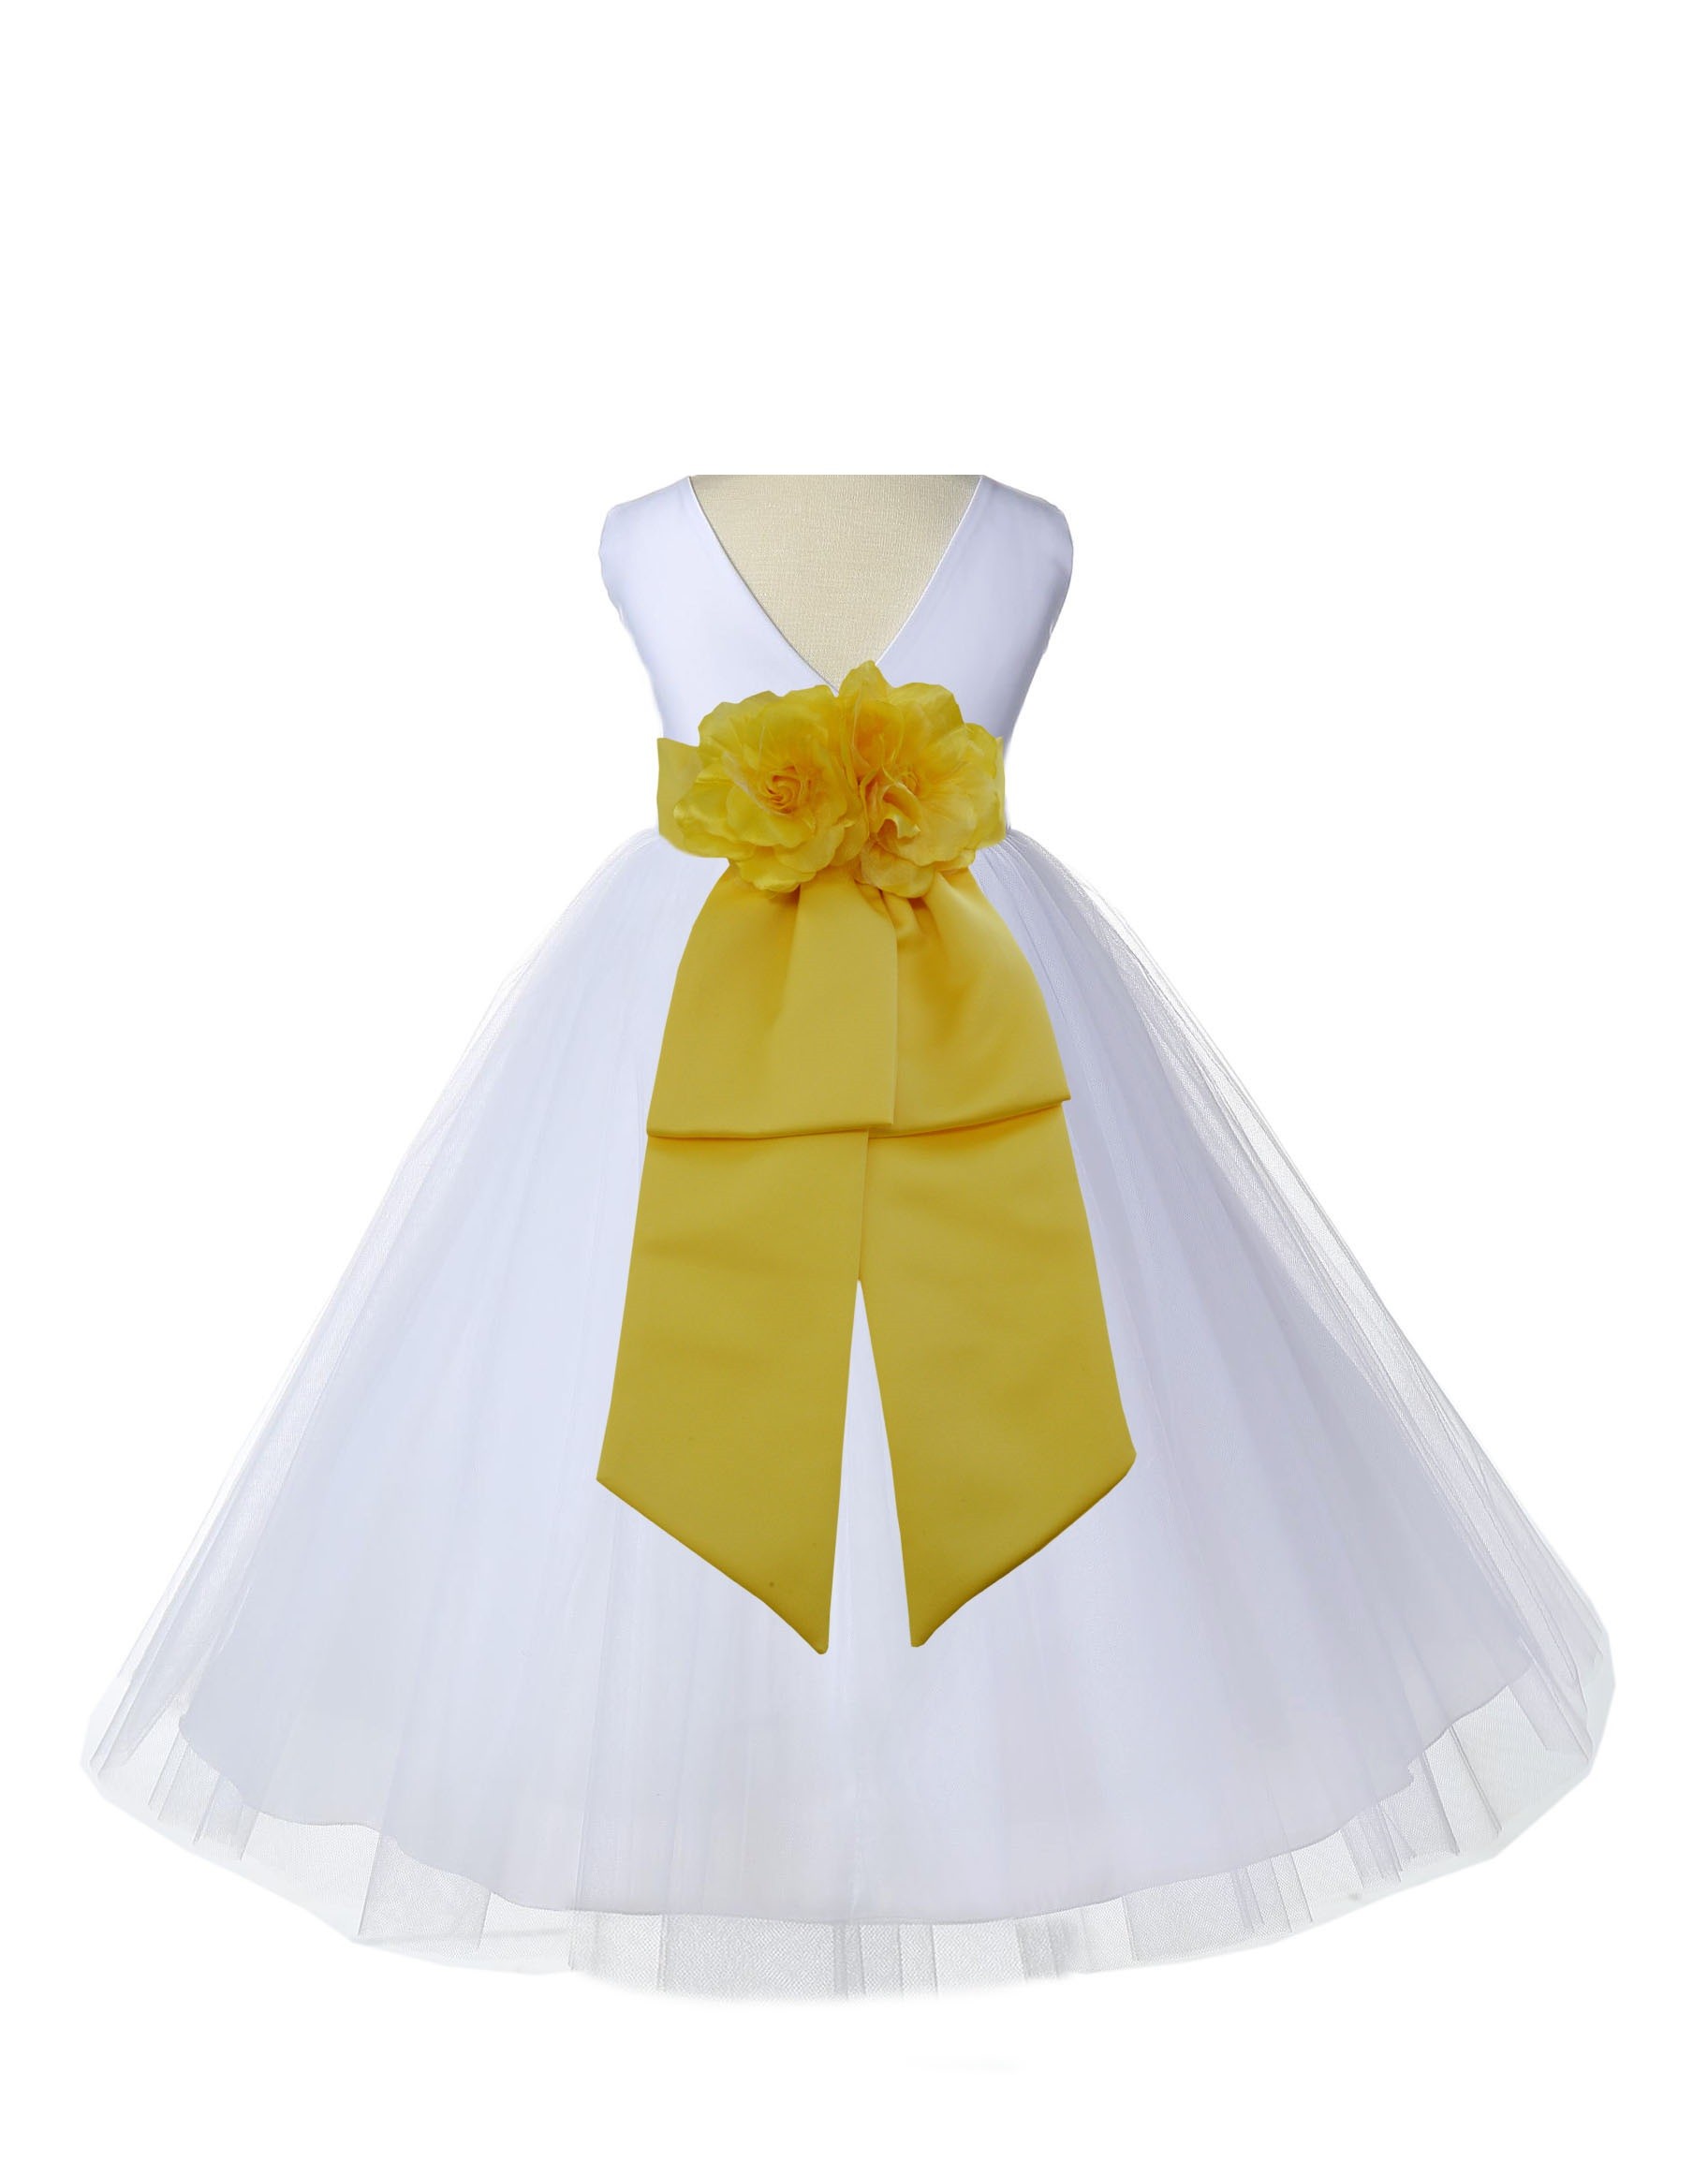 V-Neck Tulle White/Sunbeam Flower Girl Dress Wedding Pageant 108